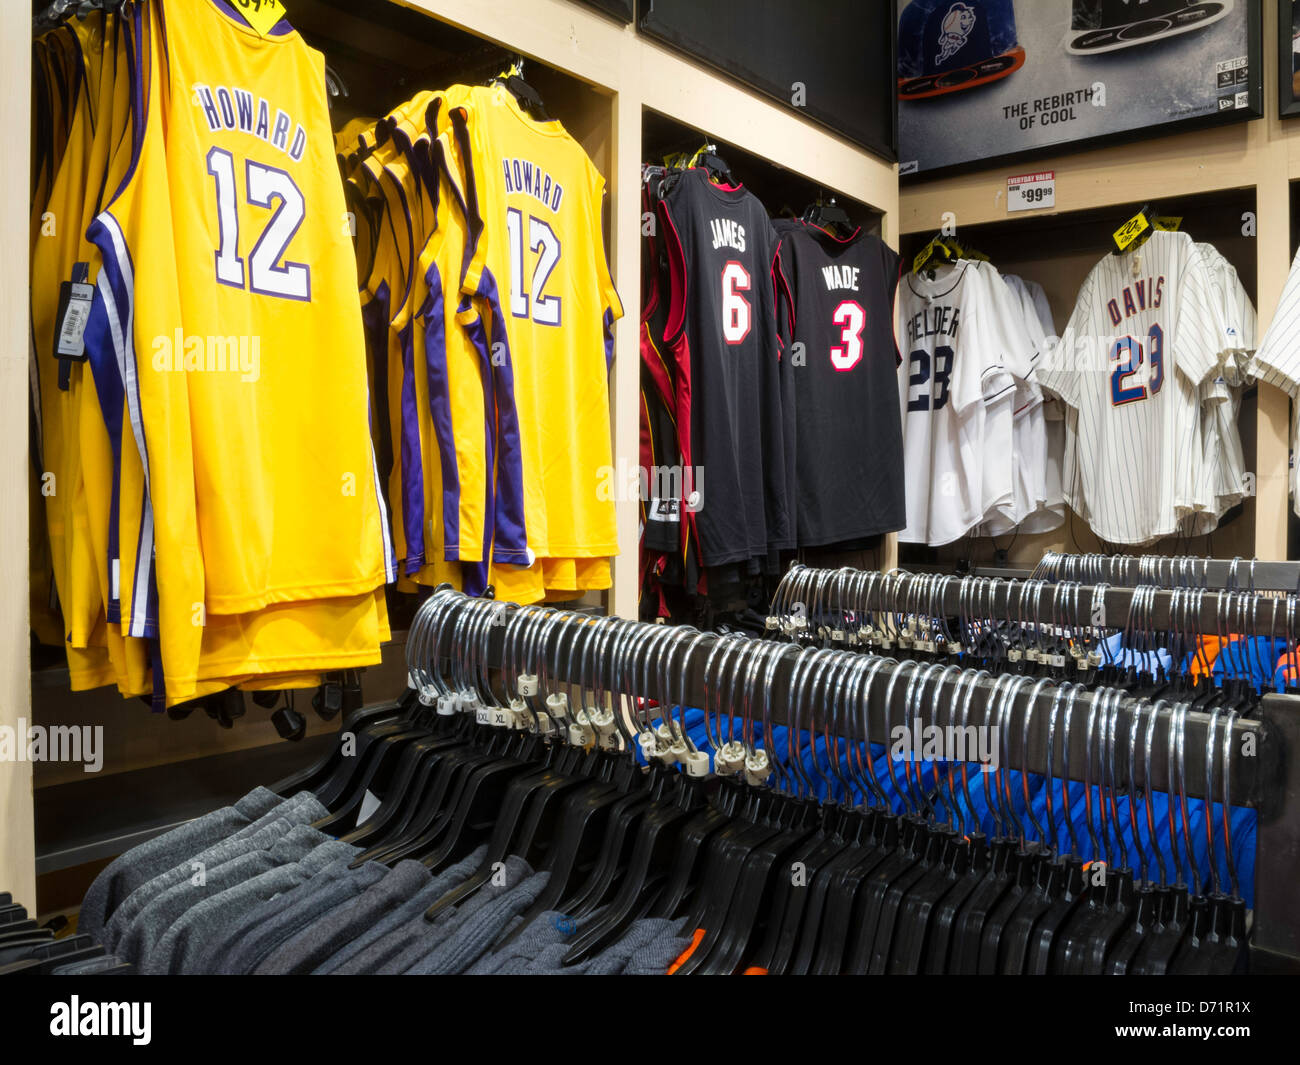 NBA Jerseys, Modell's Sporting Goods el interior de la tienda, NYC  Fotografía de stock - Alamy